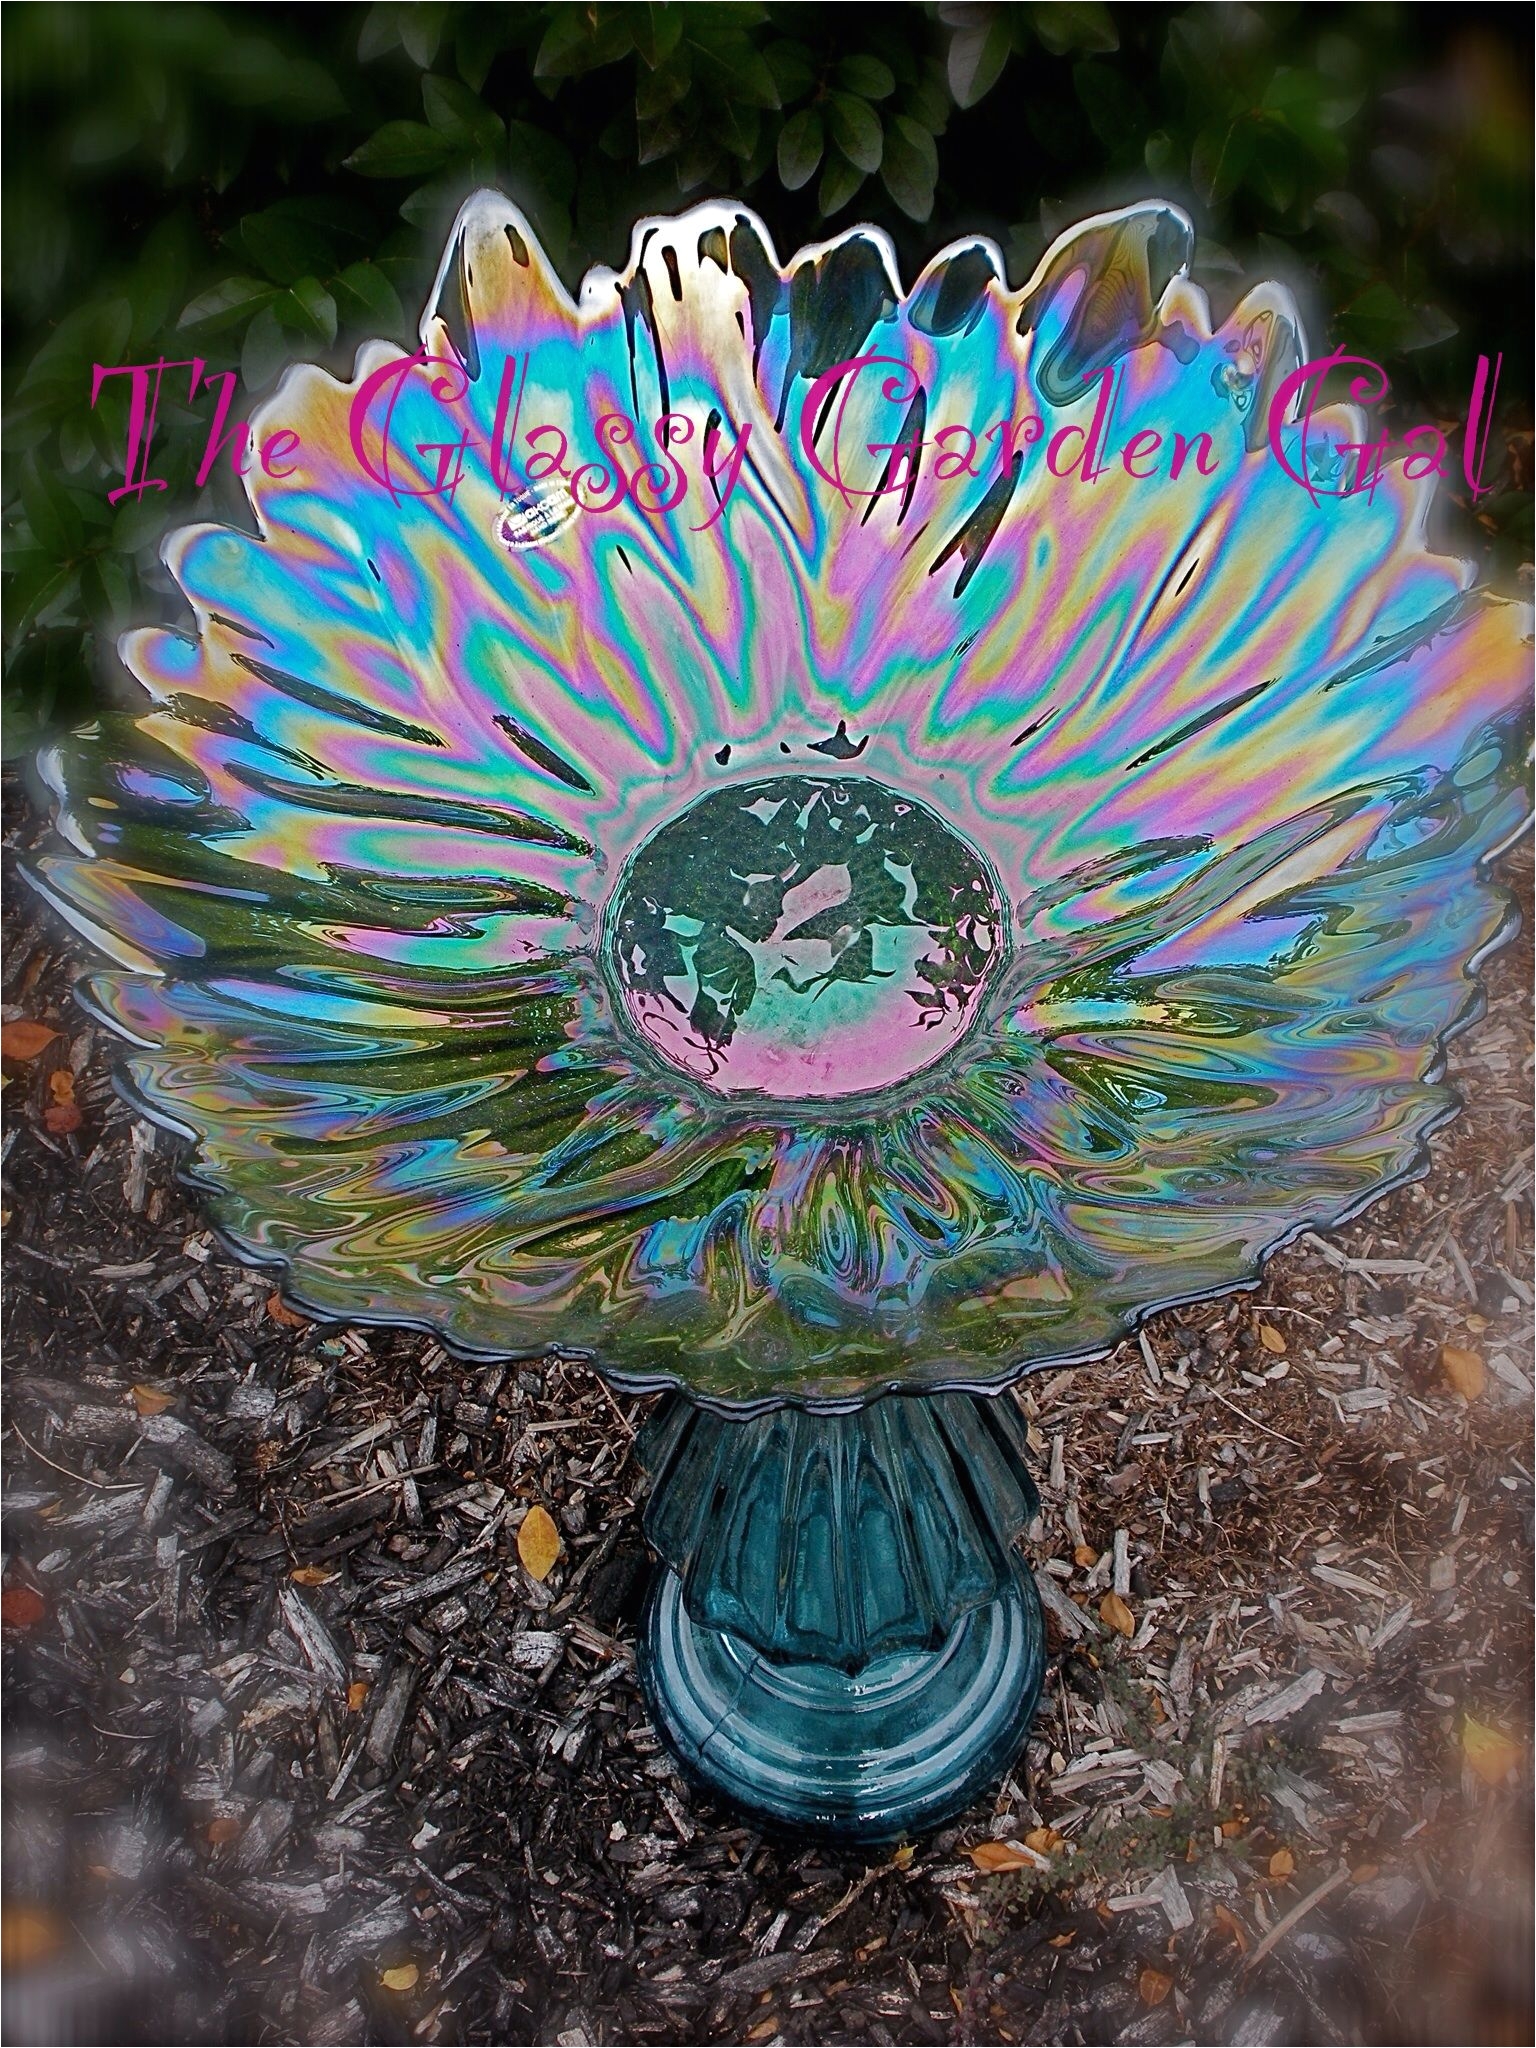 Glass Plate Flower Garden Art Glass Bird Bath Glass Garden Art Yard Art Repurposed Recycled Up